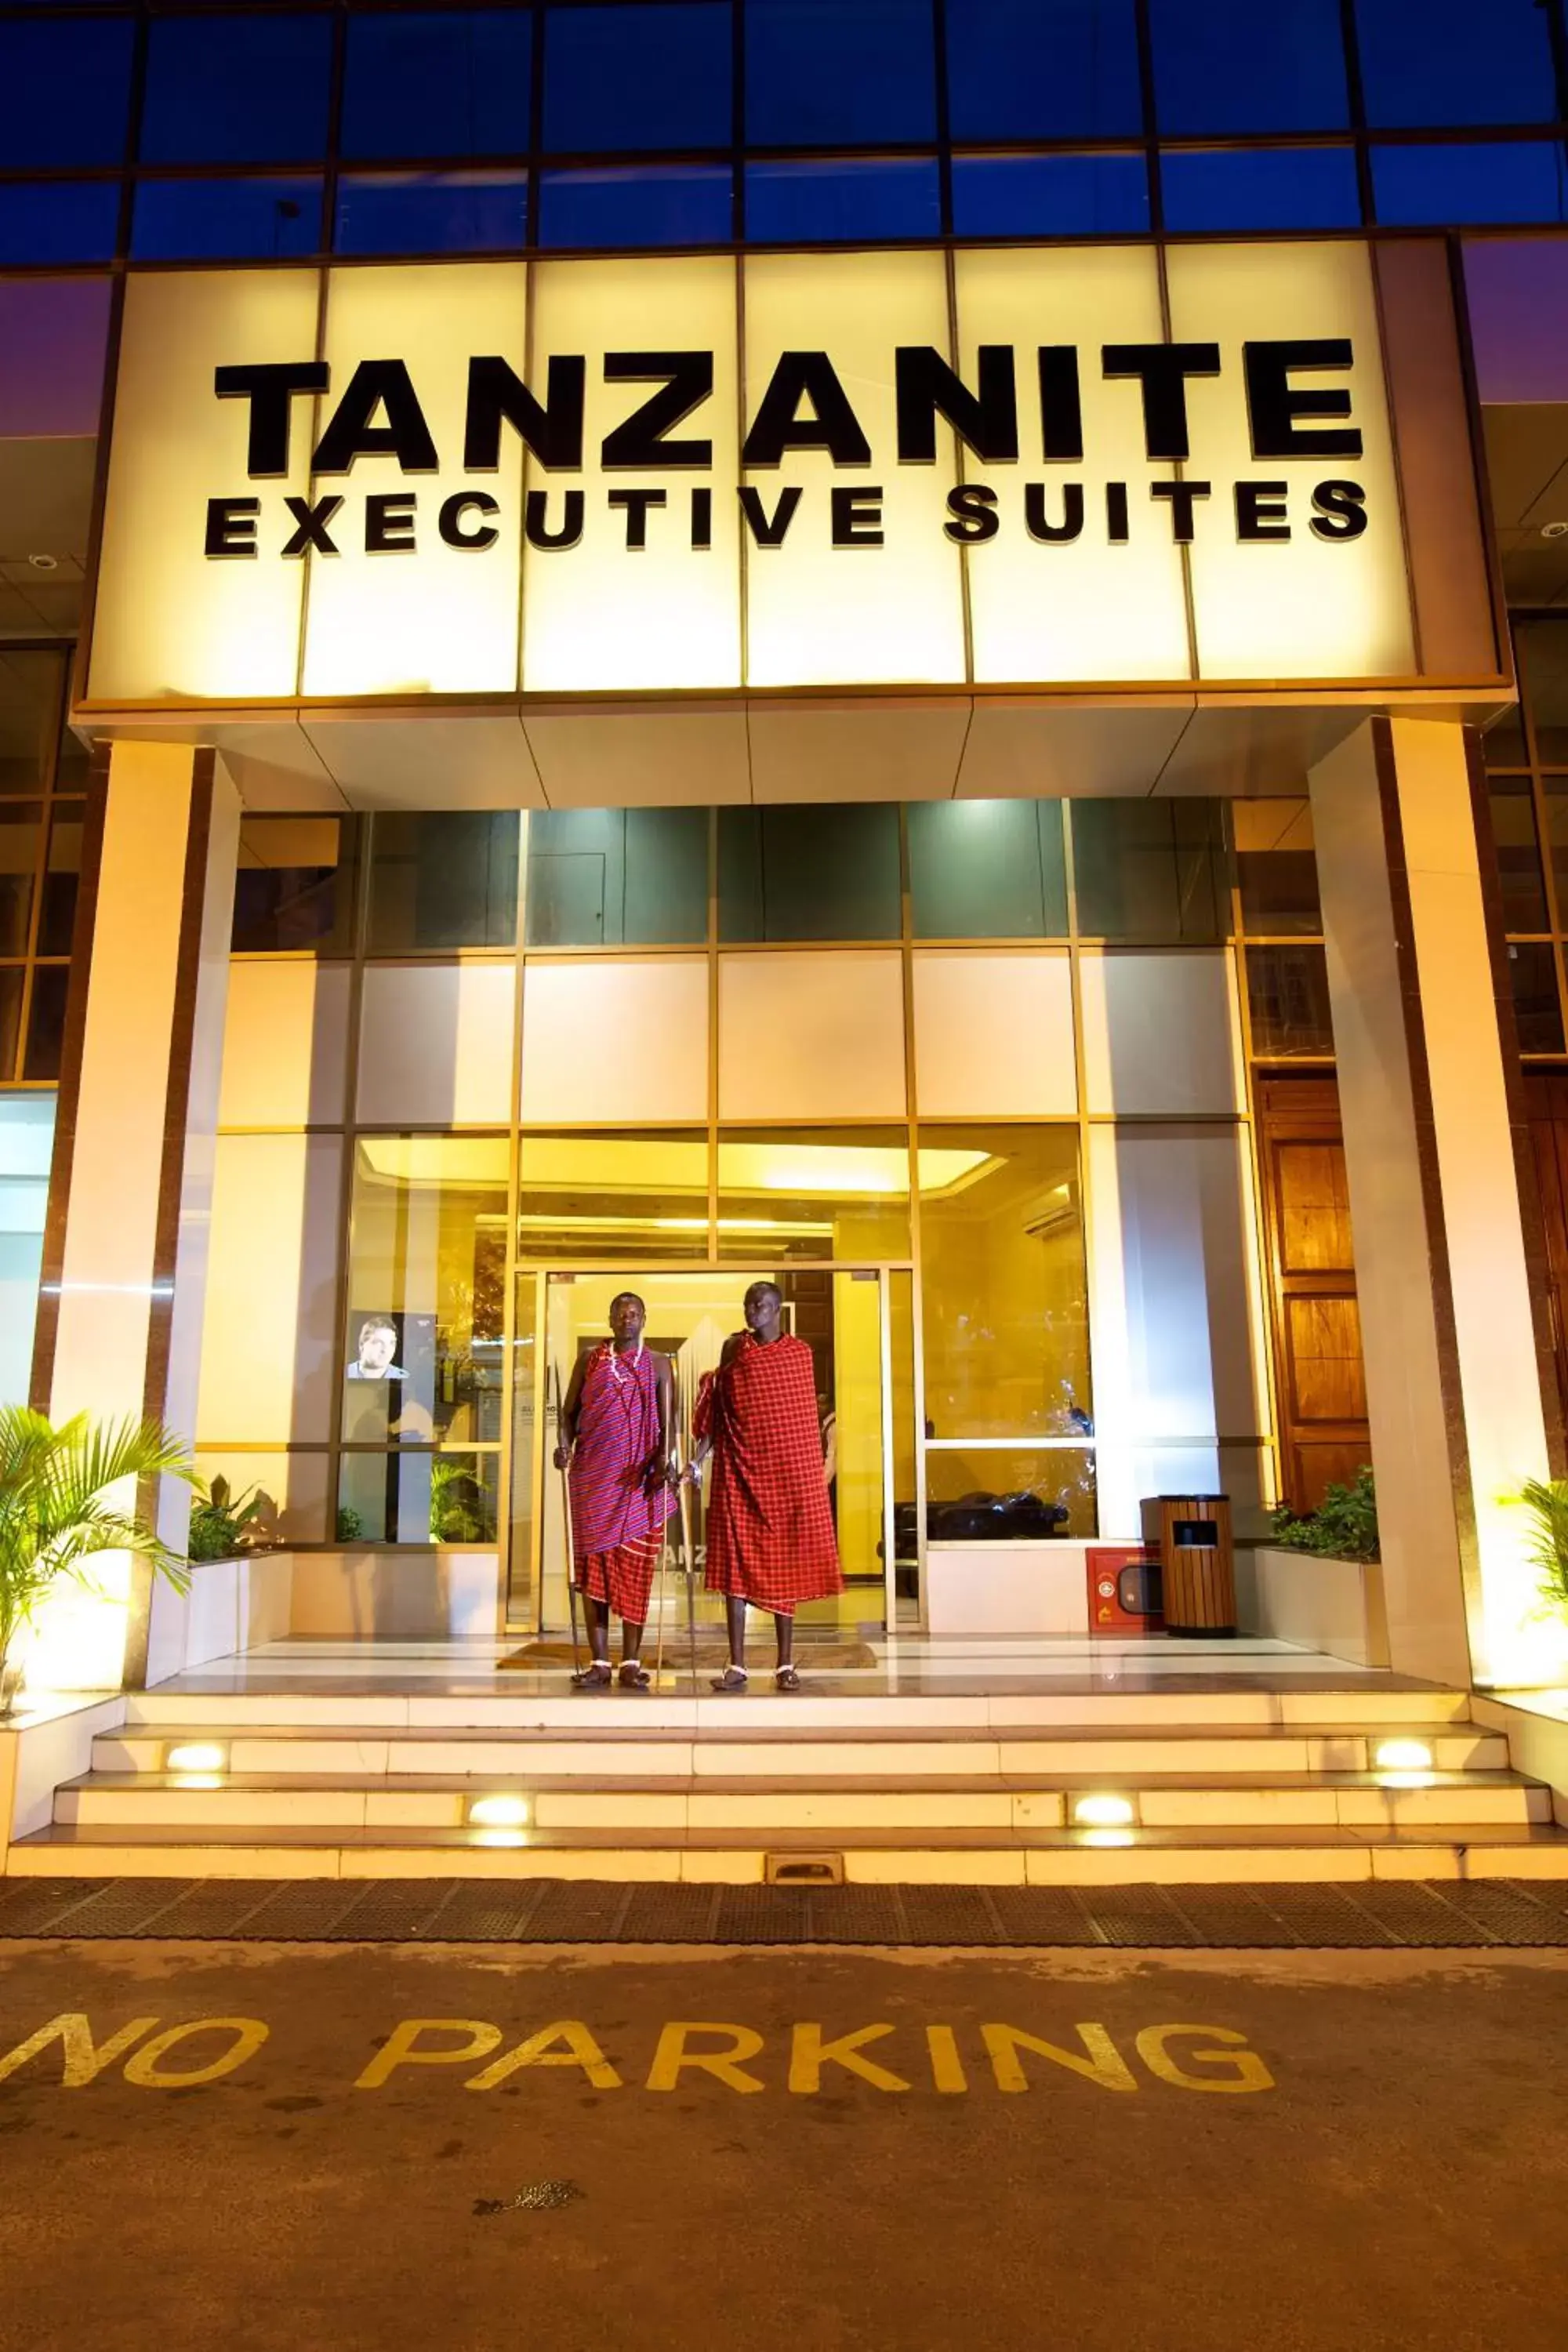 Facade/entrance in Tanzanite Executive Suites